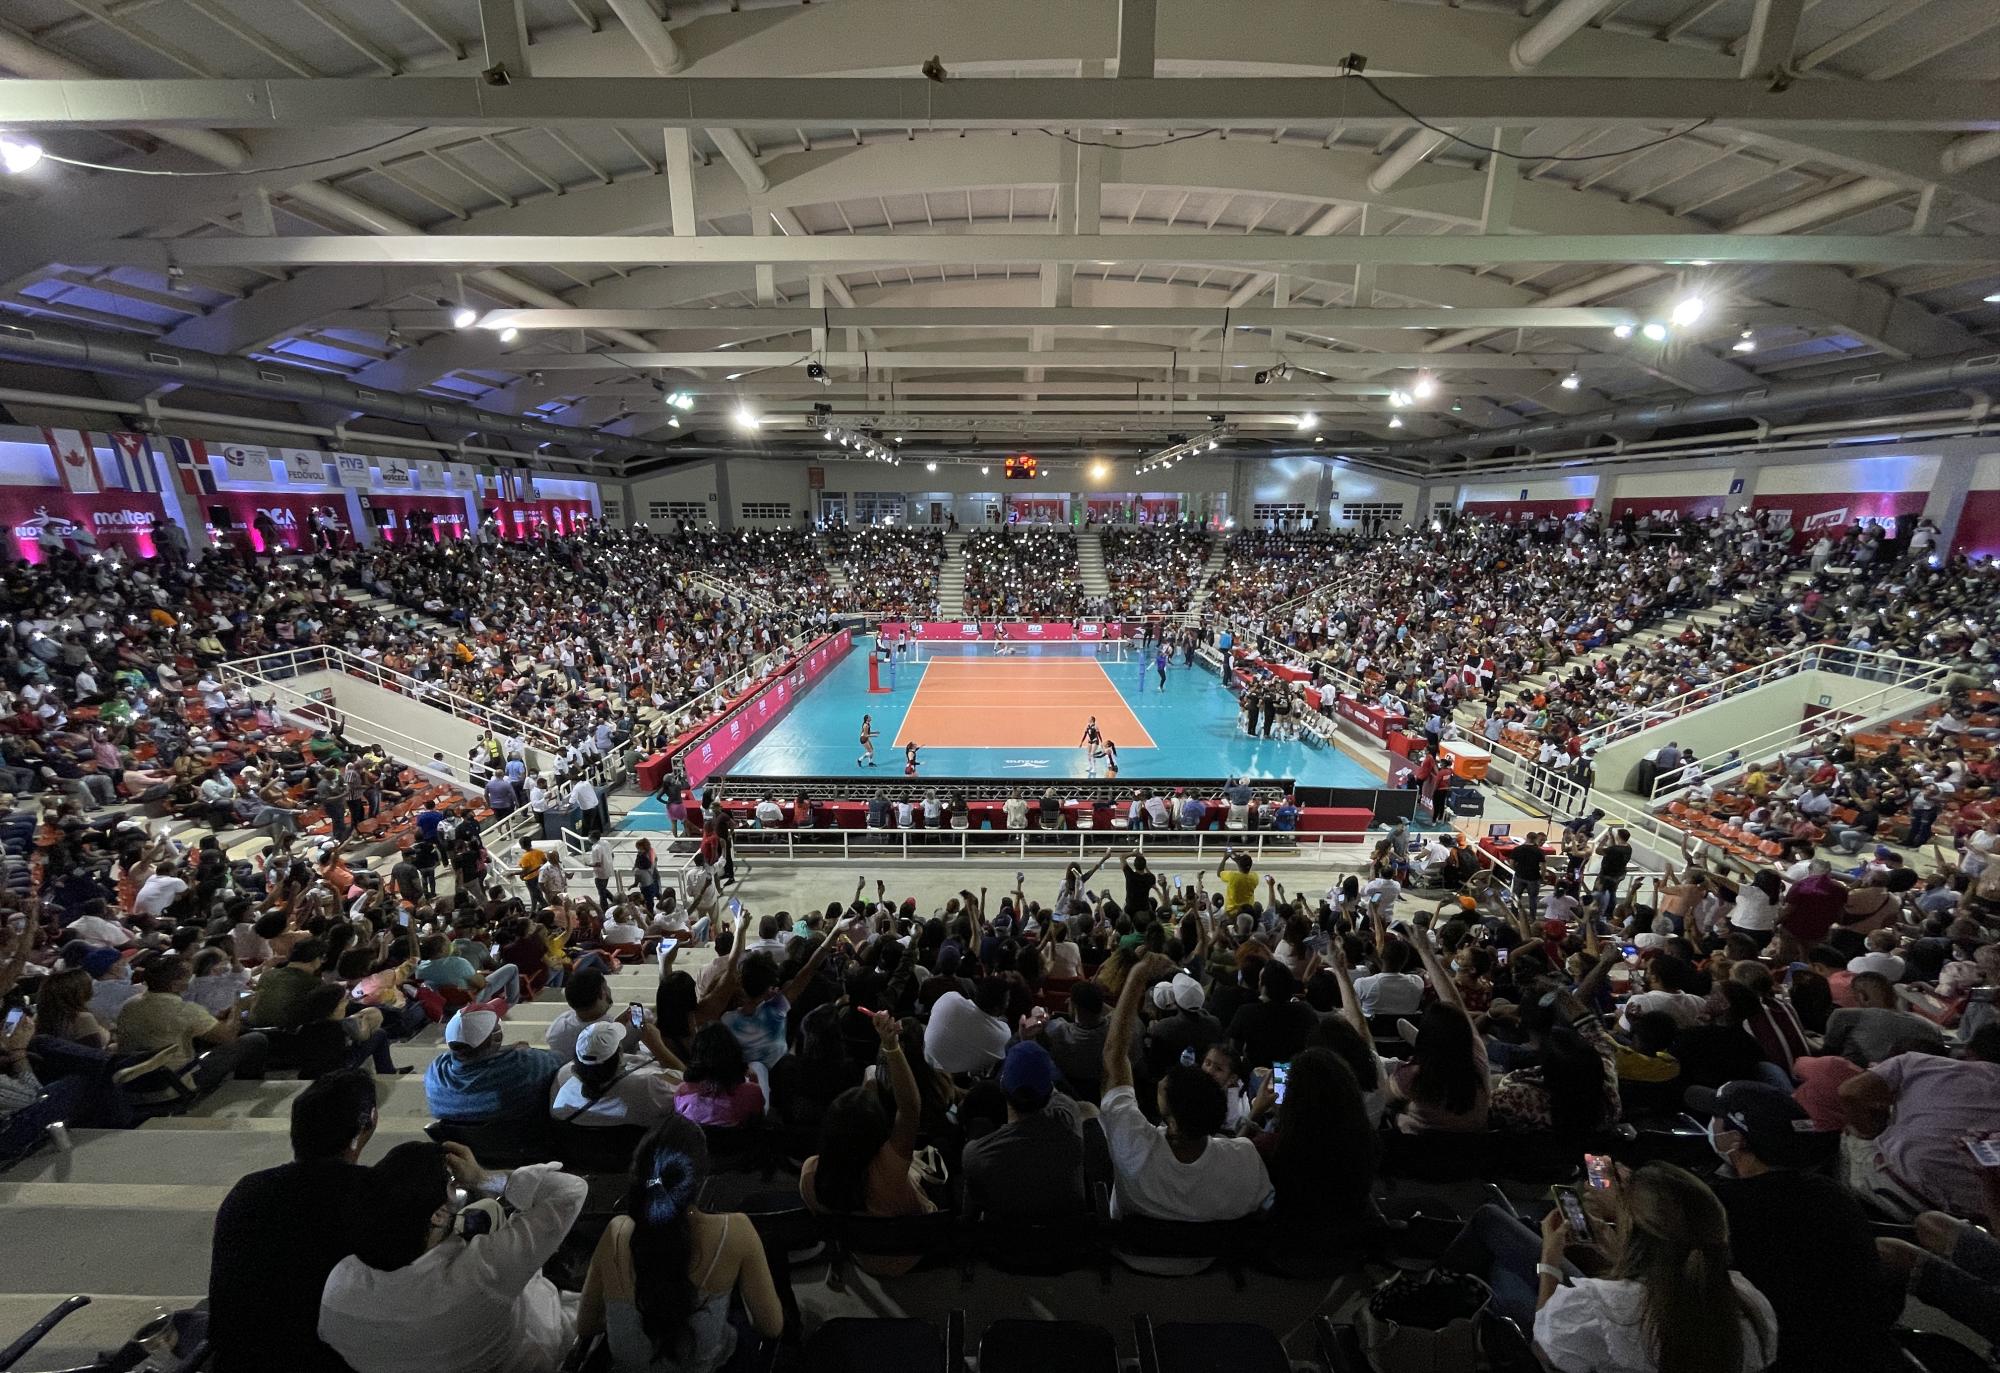 El pabellón de voleibol estuvo a toda capacidad durante la final del Norceca Panam Final 6. (Foto: Nelson Pulido / Reinas del Caribe)